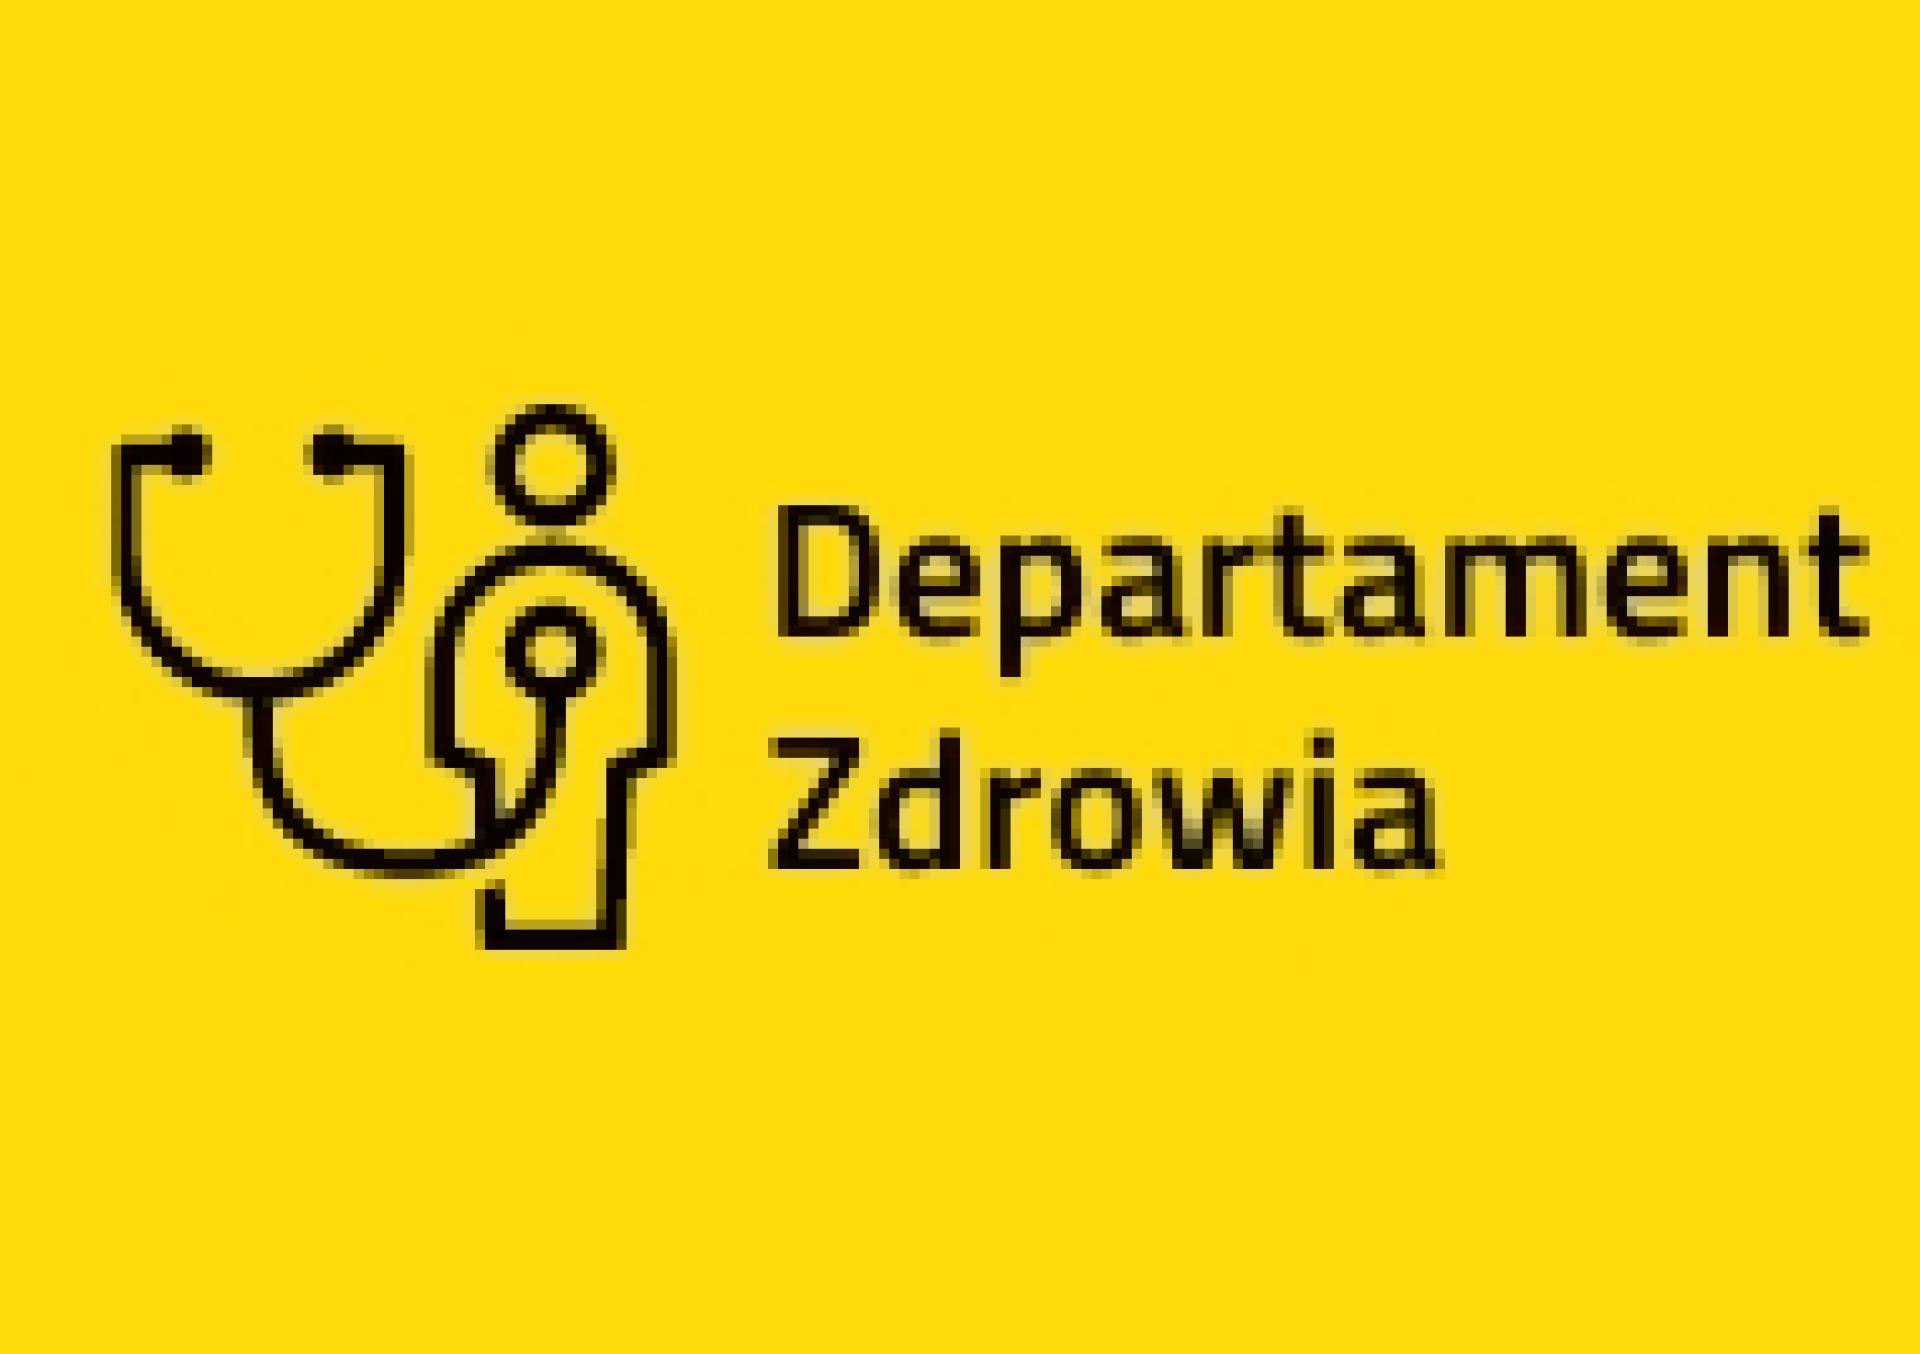 Konsultacje projektu uchwały Sejmiku zmieniającej uchwałę w sprawie nadania statutu Szpitalowi Wojewódzkiemu w Poznaniu - zobacz więcej